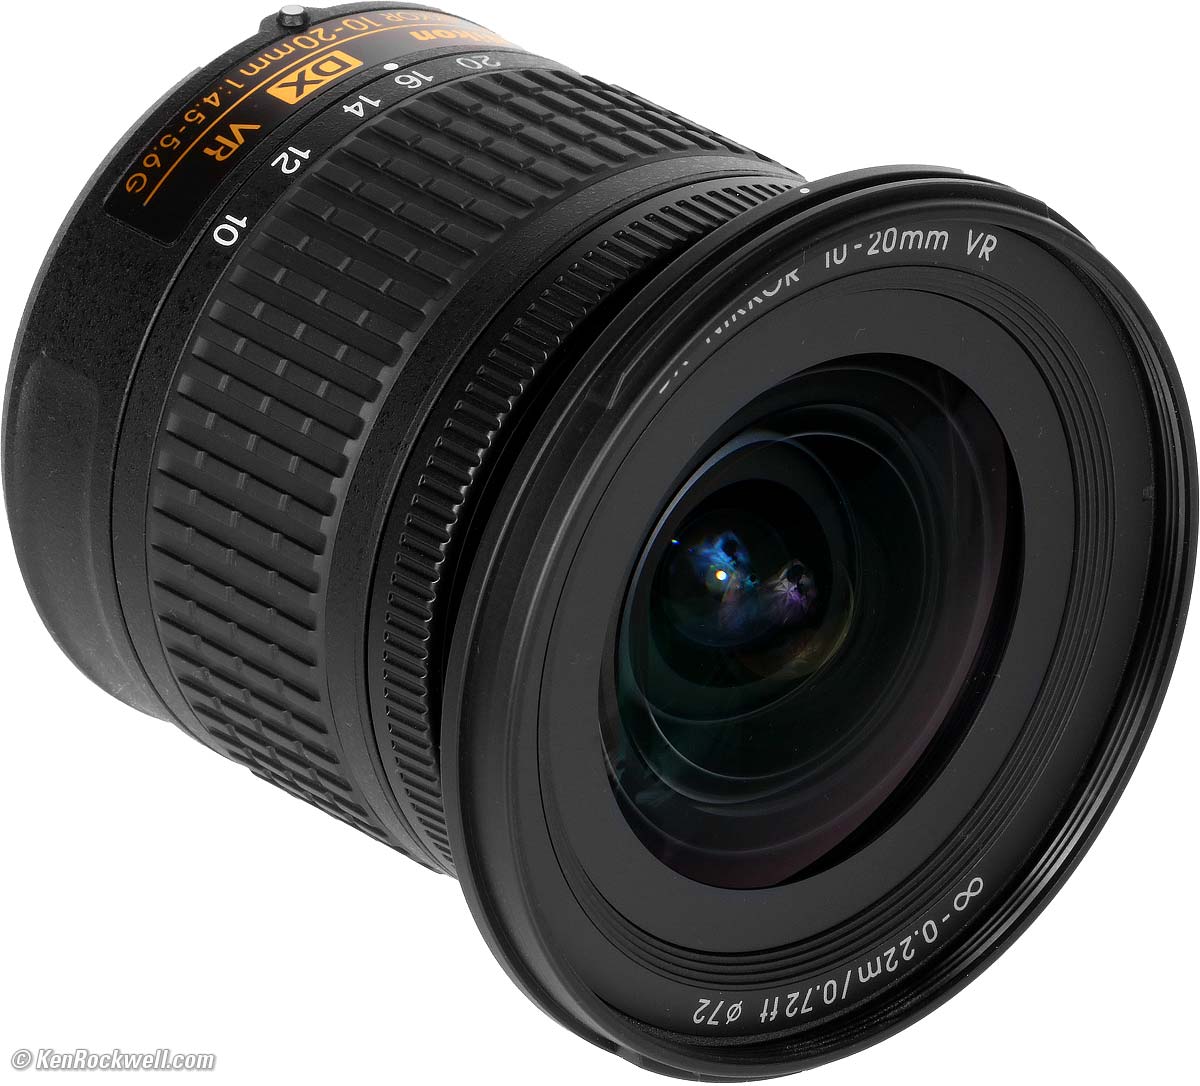 Nikon 10-20mm DX Review